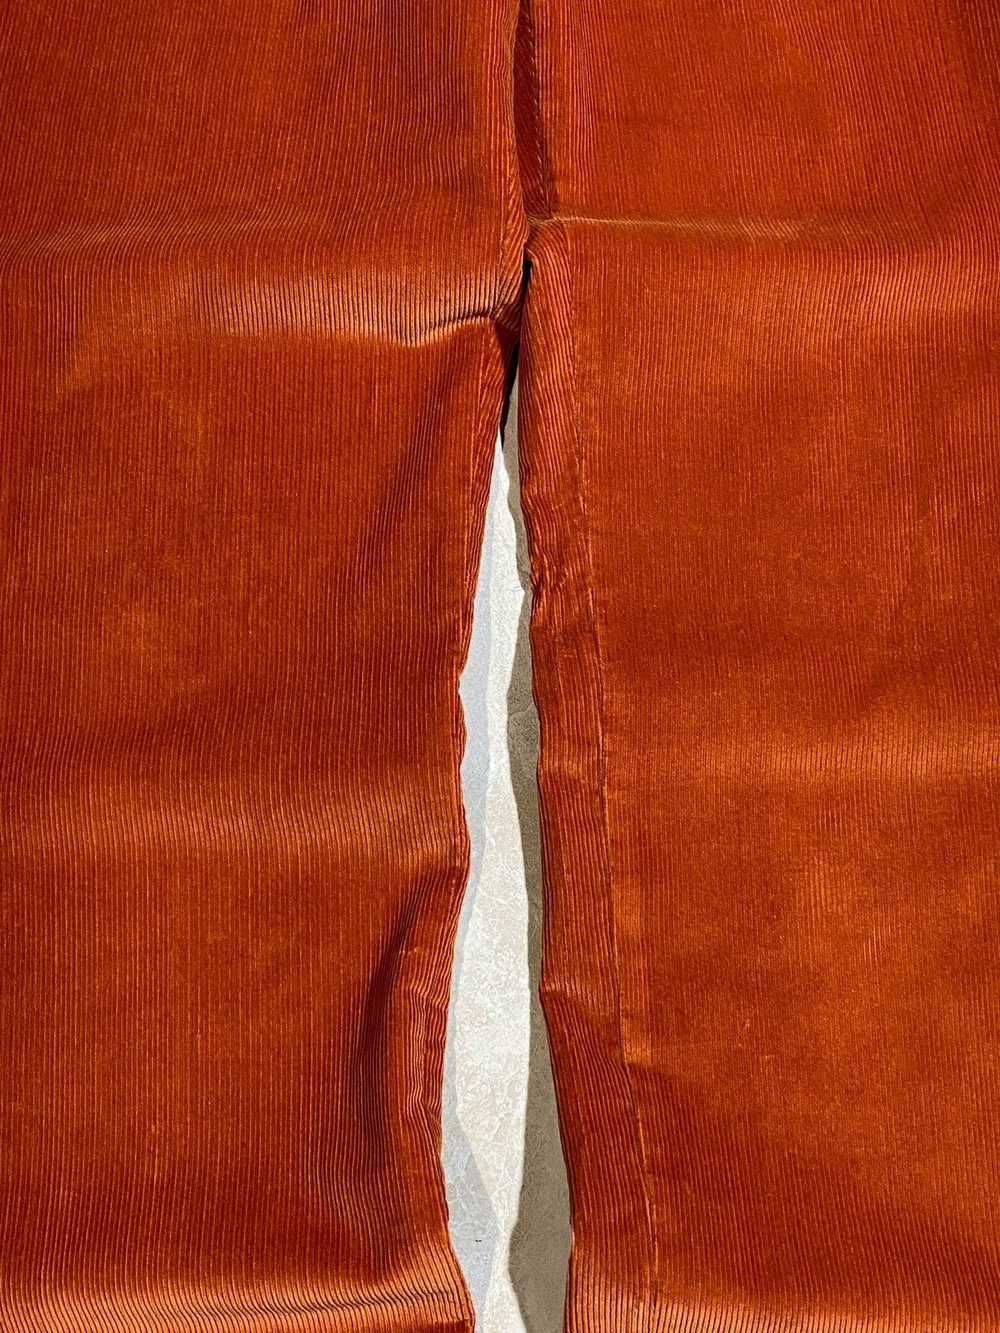 Etro Etro Men’s Cotton Corduroy Pants Orange Size… - image 10